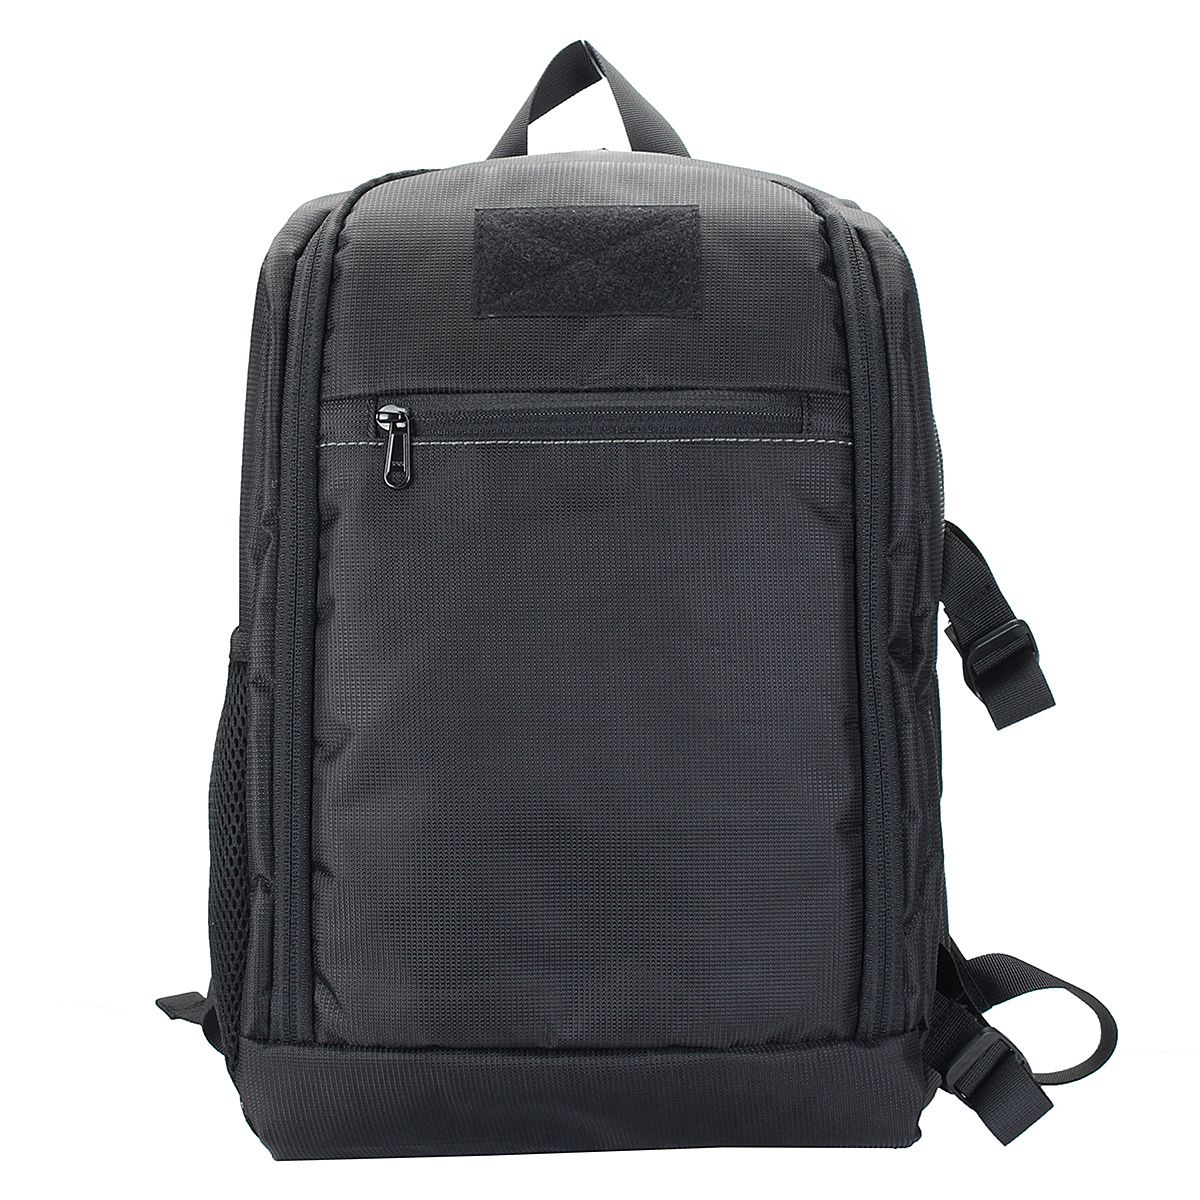 Waterproof-Backpack-Shoulder-Bag-Laptop-Case-For-DSLR-Camera-Lens-Accessories-1401643